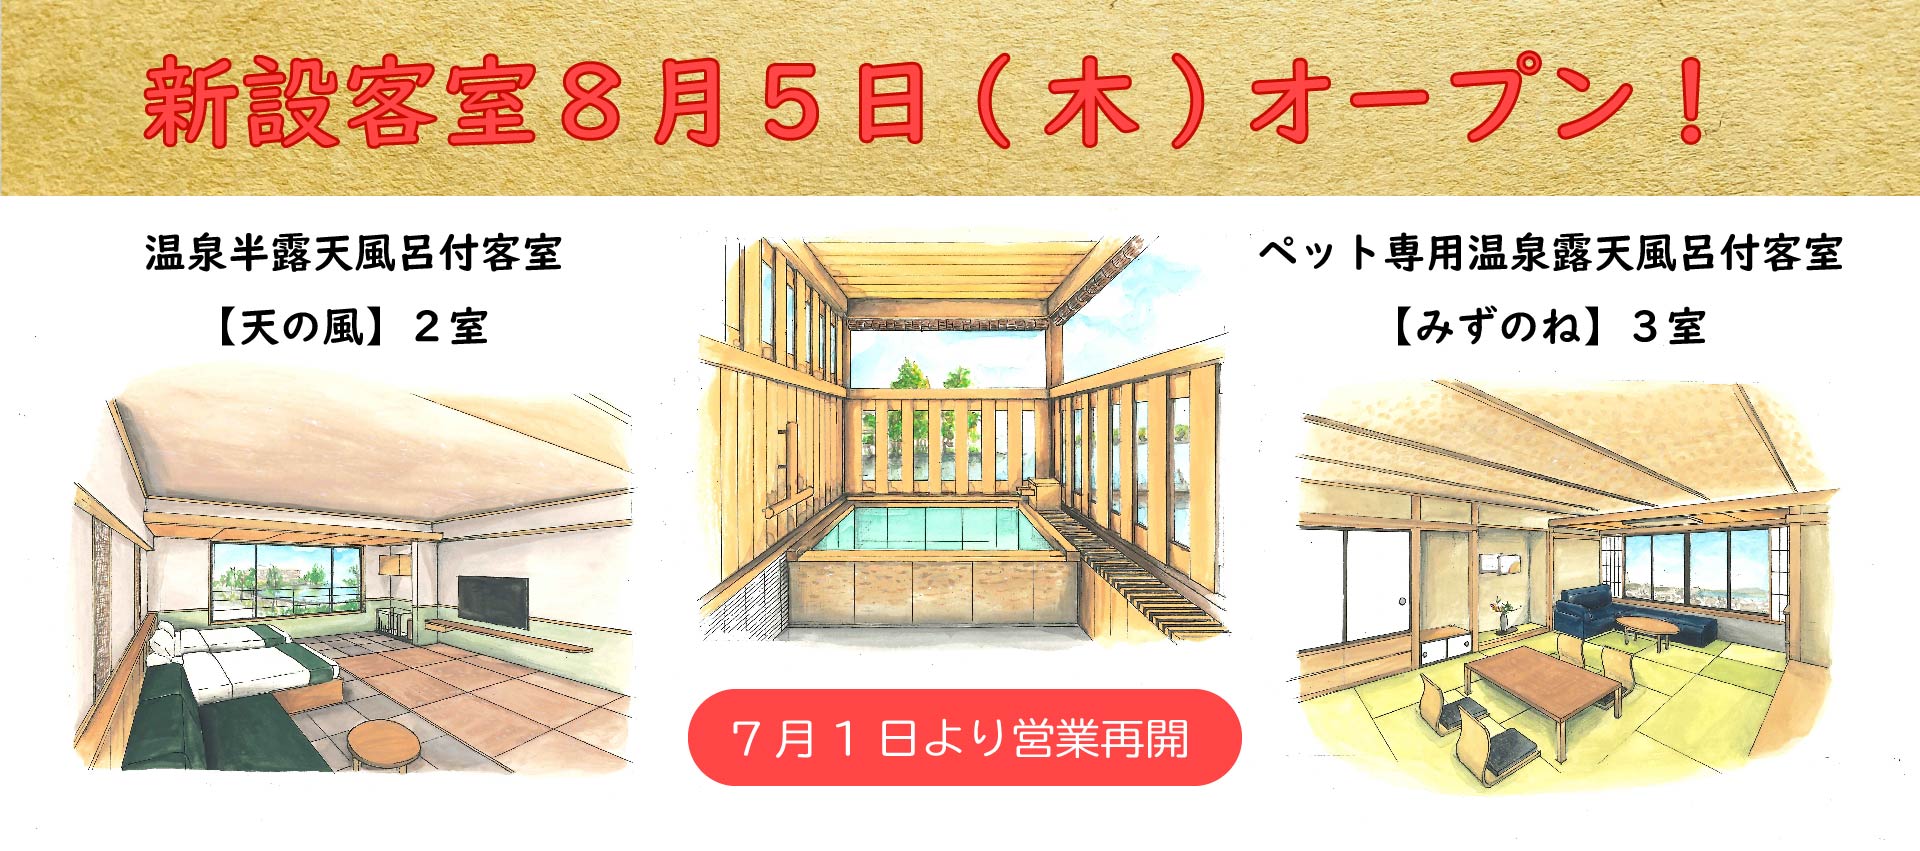 ■8/5(木)オープンの新客室のご予約について■